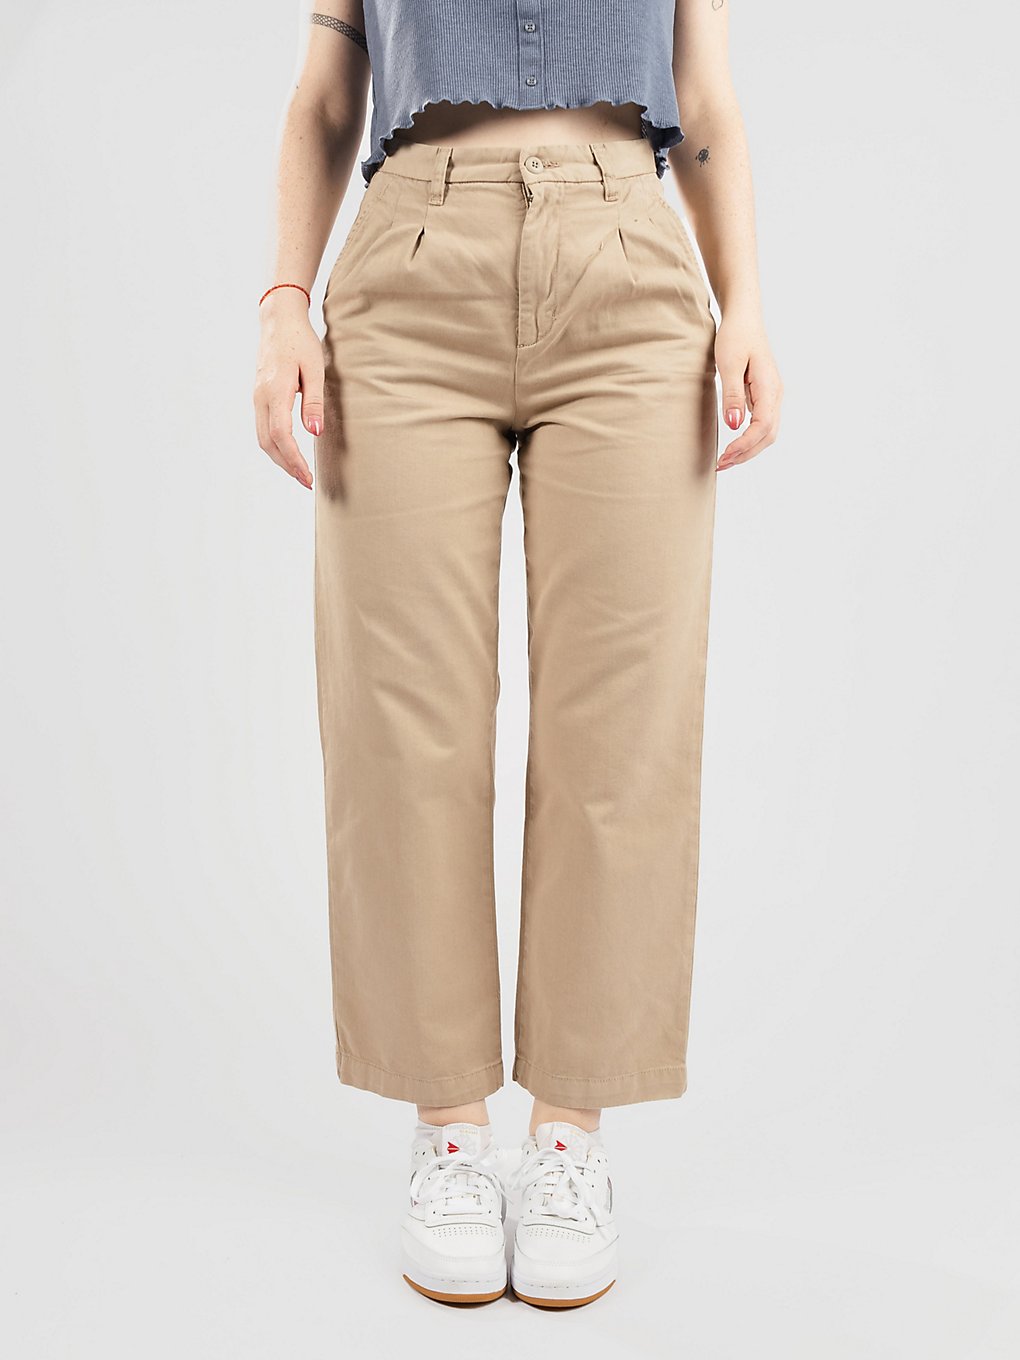 Carhartt WIP Cara Pantalones marrón product